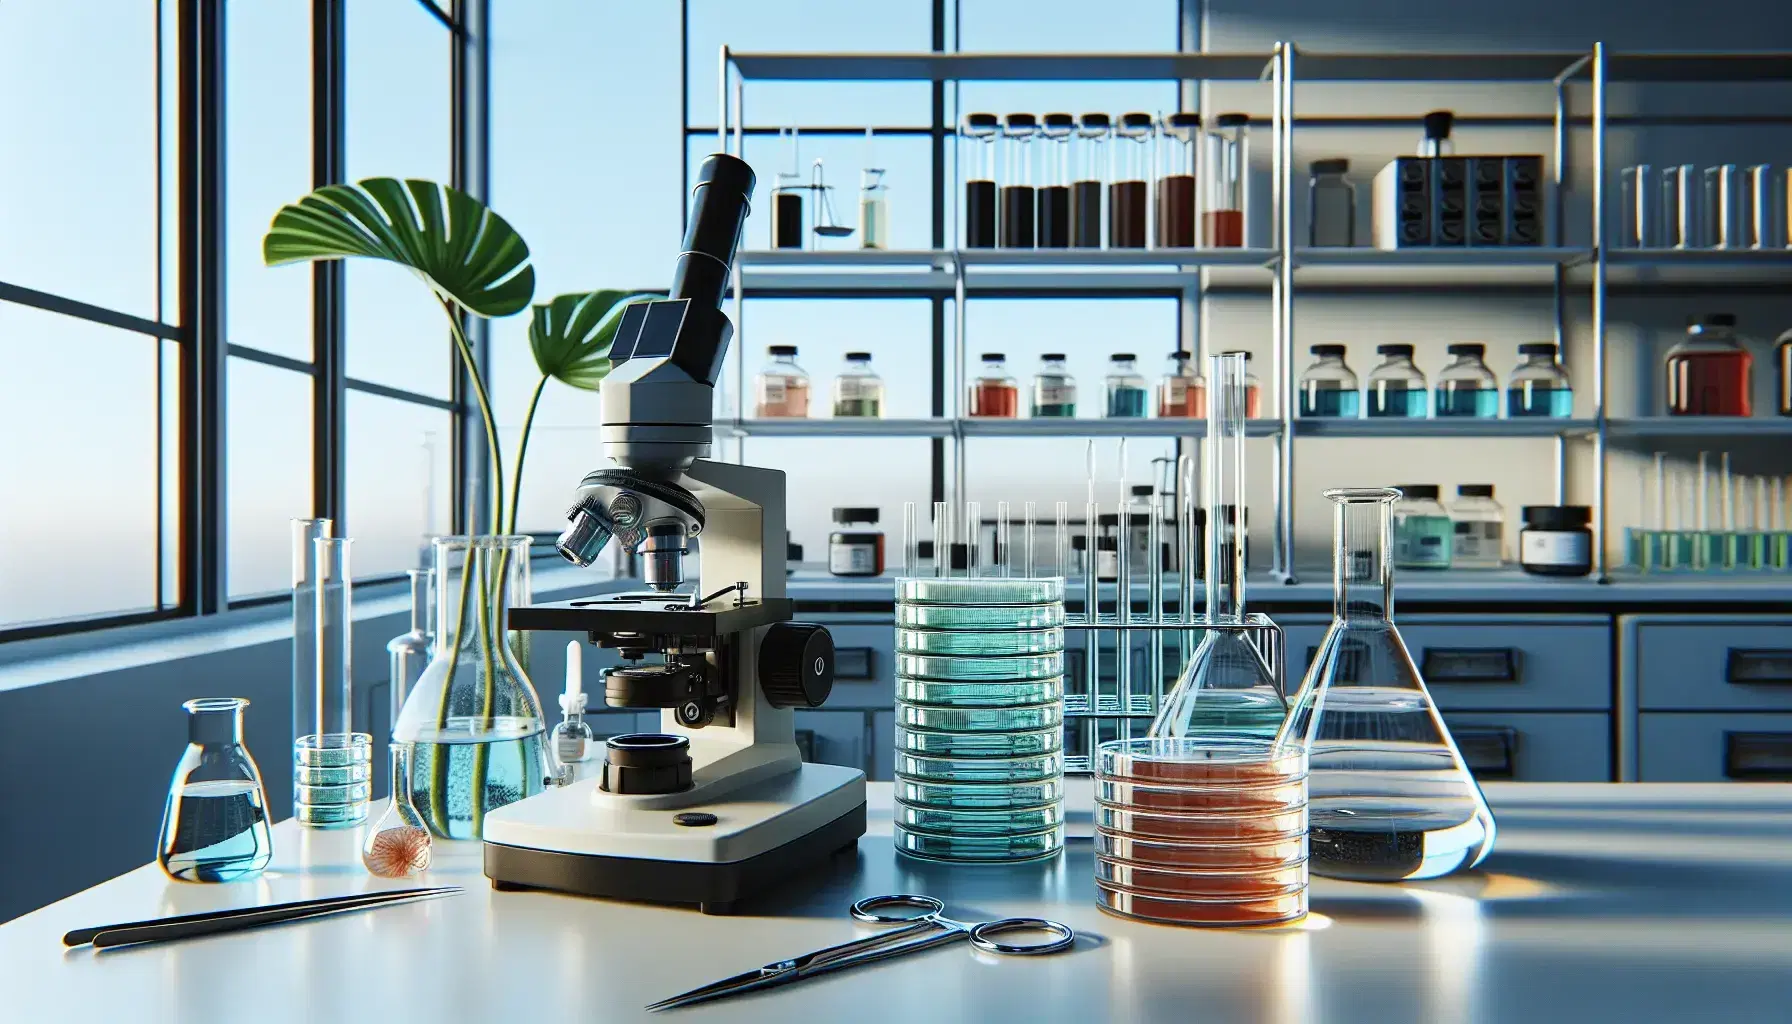 Laboratorio de biología con microscopio moderno, platos de Petri con medio de cultivo, pinzas, quemador Bunsen apagado, estantería con frascos de líquidos y planta verde.